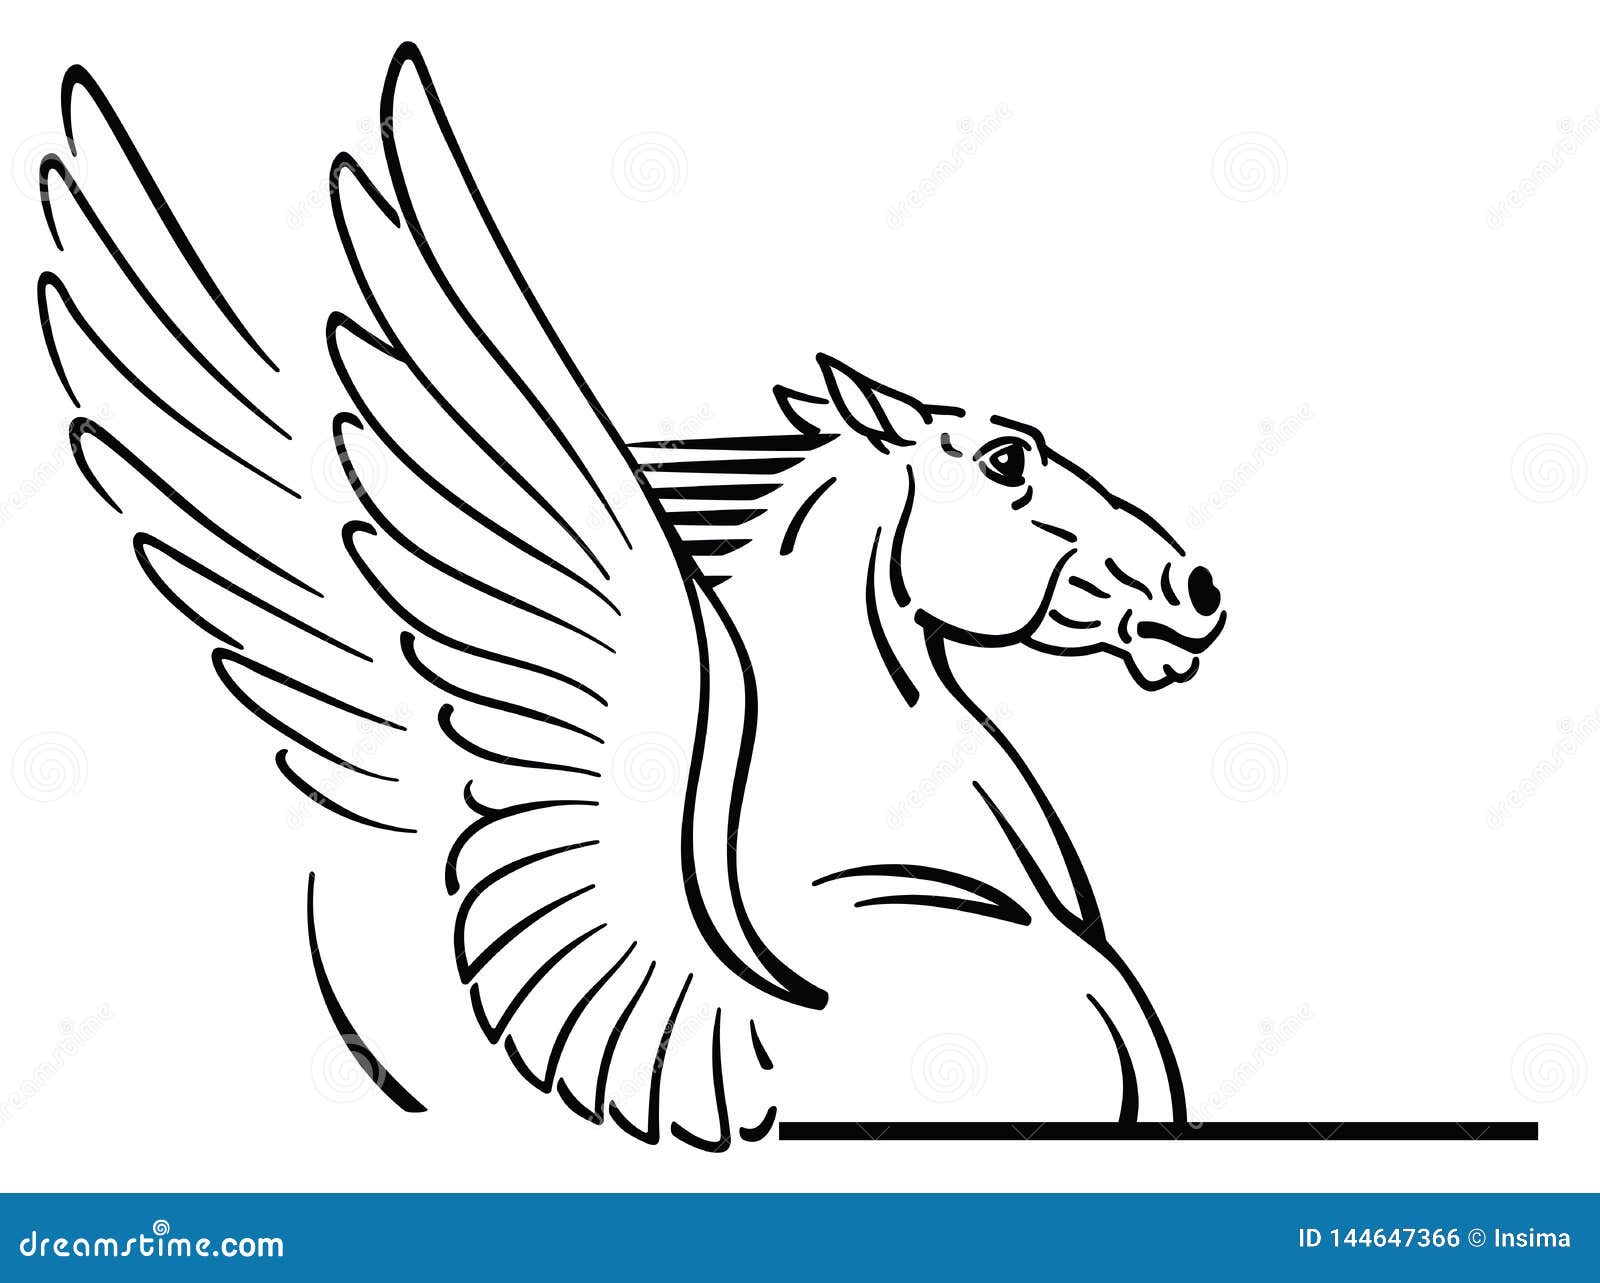 logo of pegasus mythological winged horse